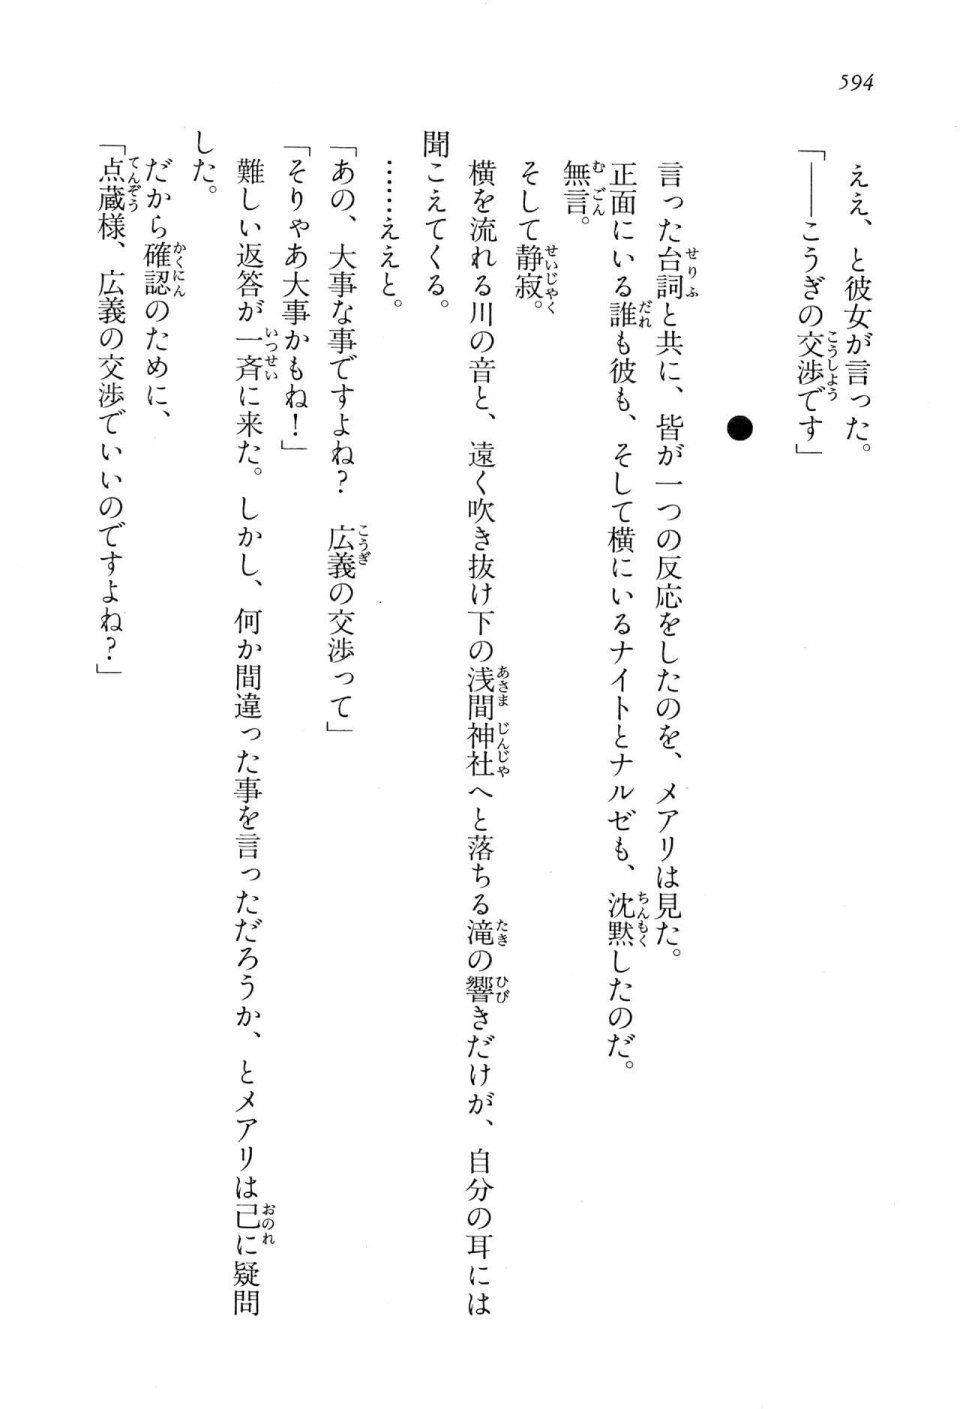 Kyoukai Senjou no Horizon LN Vol 13(6A) - Photo #594